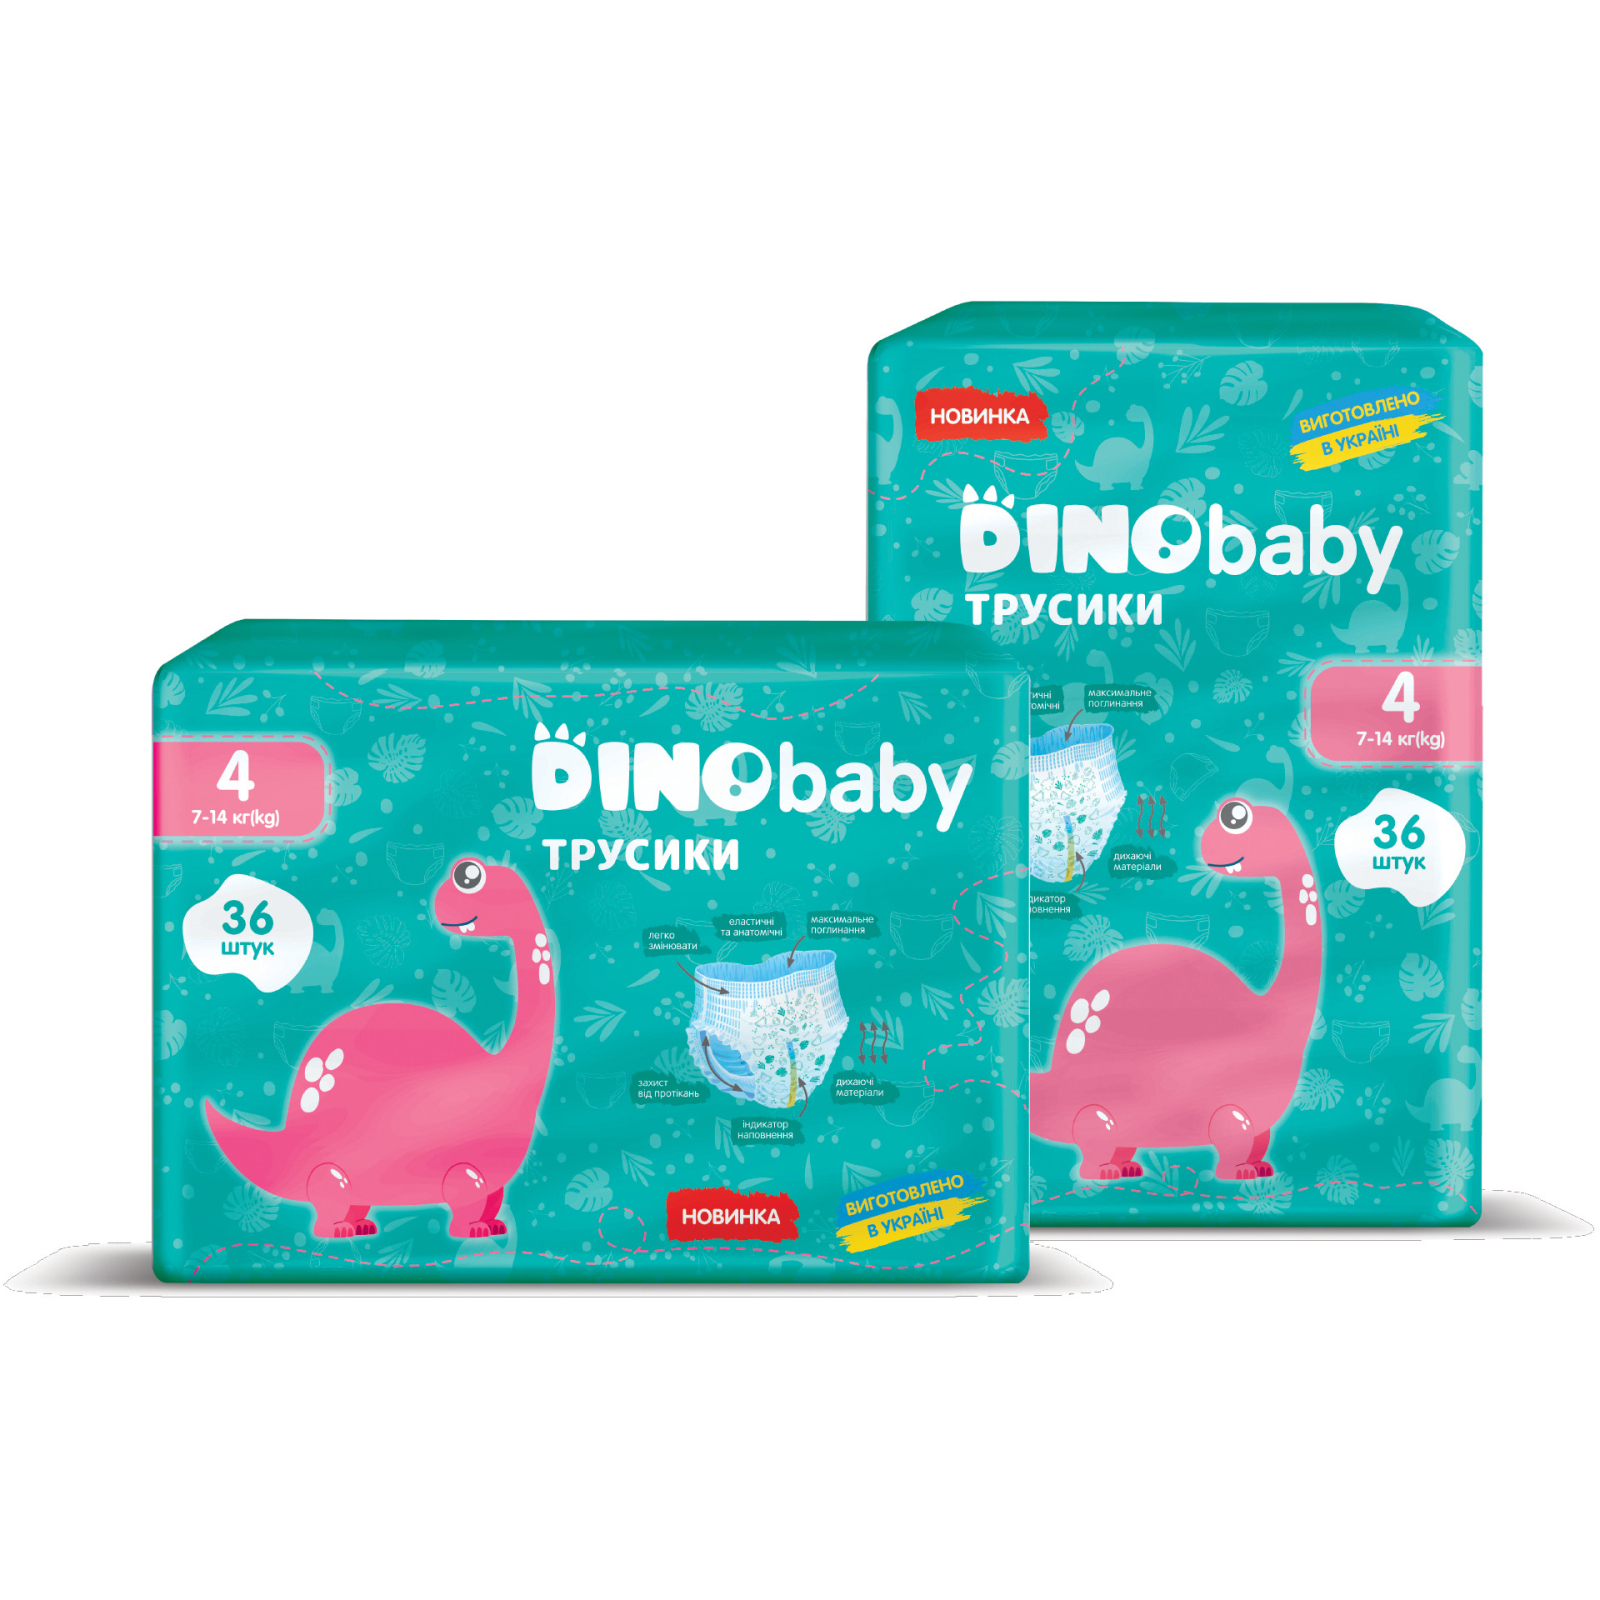 Подгузники Dino Baby Размер 4 (7-14 кг) 40 шт (4823098410591) изображение 2